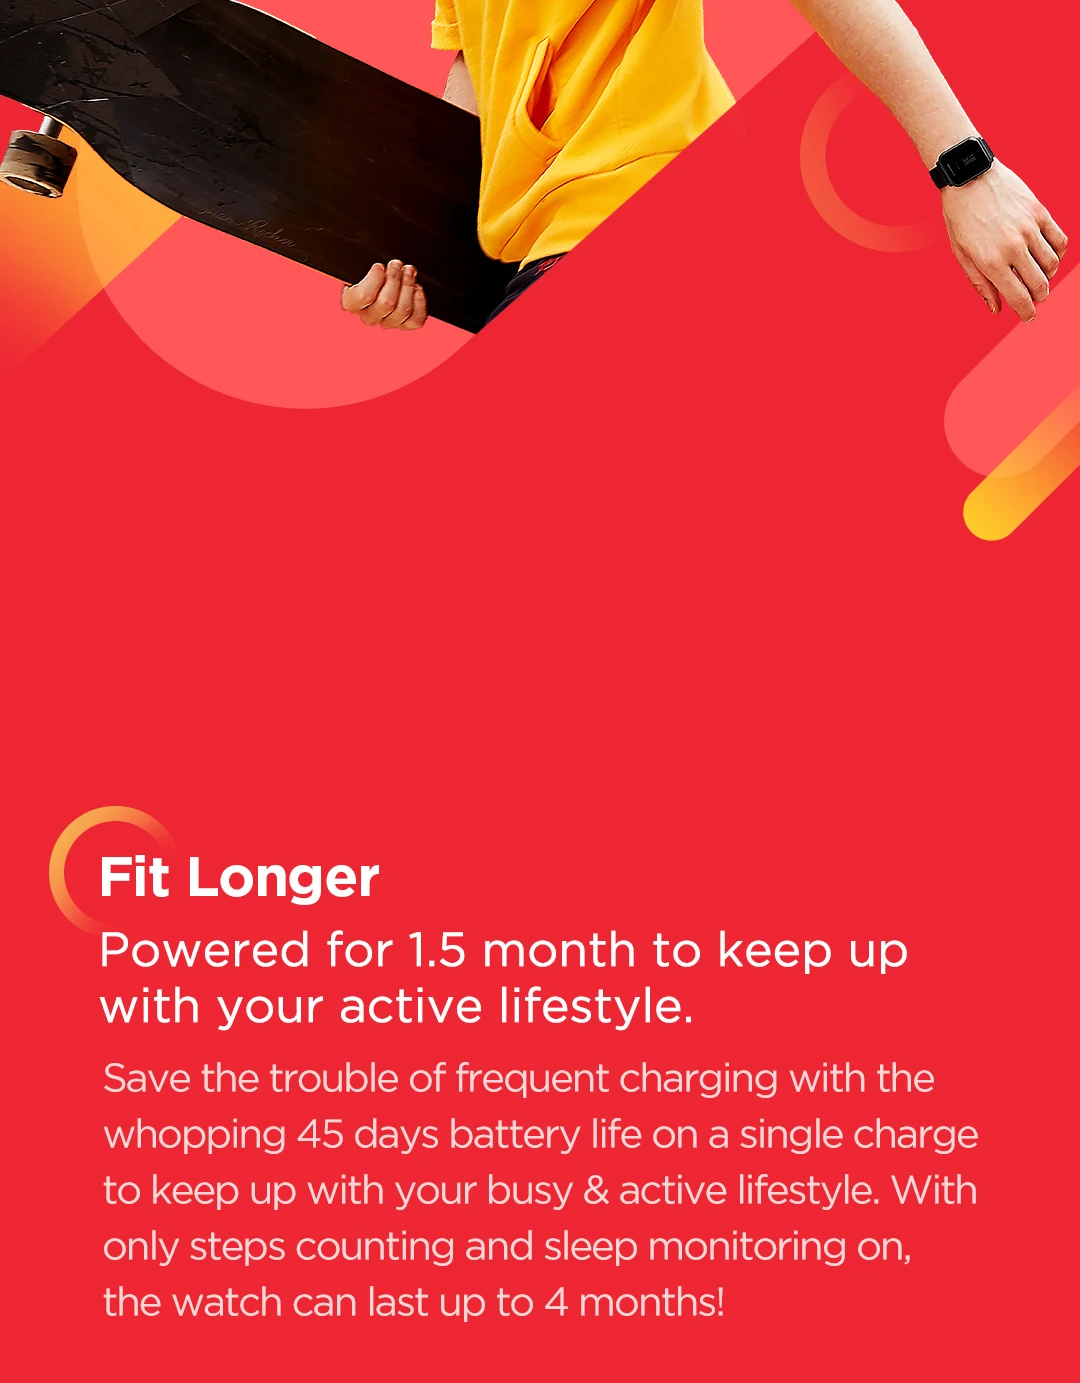 Глобальная версия Amazfit Bip Lite Смарт-часы 45 дней Срок службы батареи 3ATM в соответствии со стандартом водонепроницаемости Smartwatch для Xiaomi Android IOS